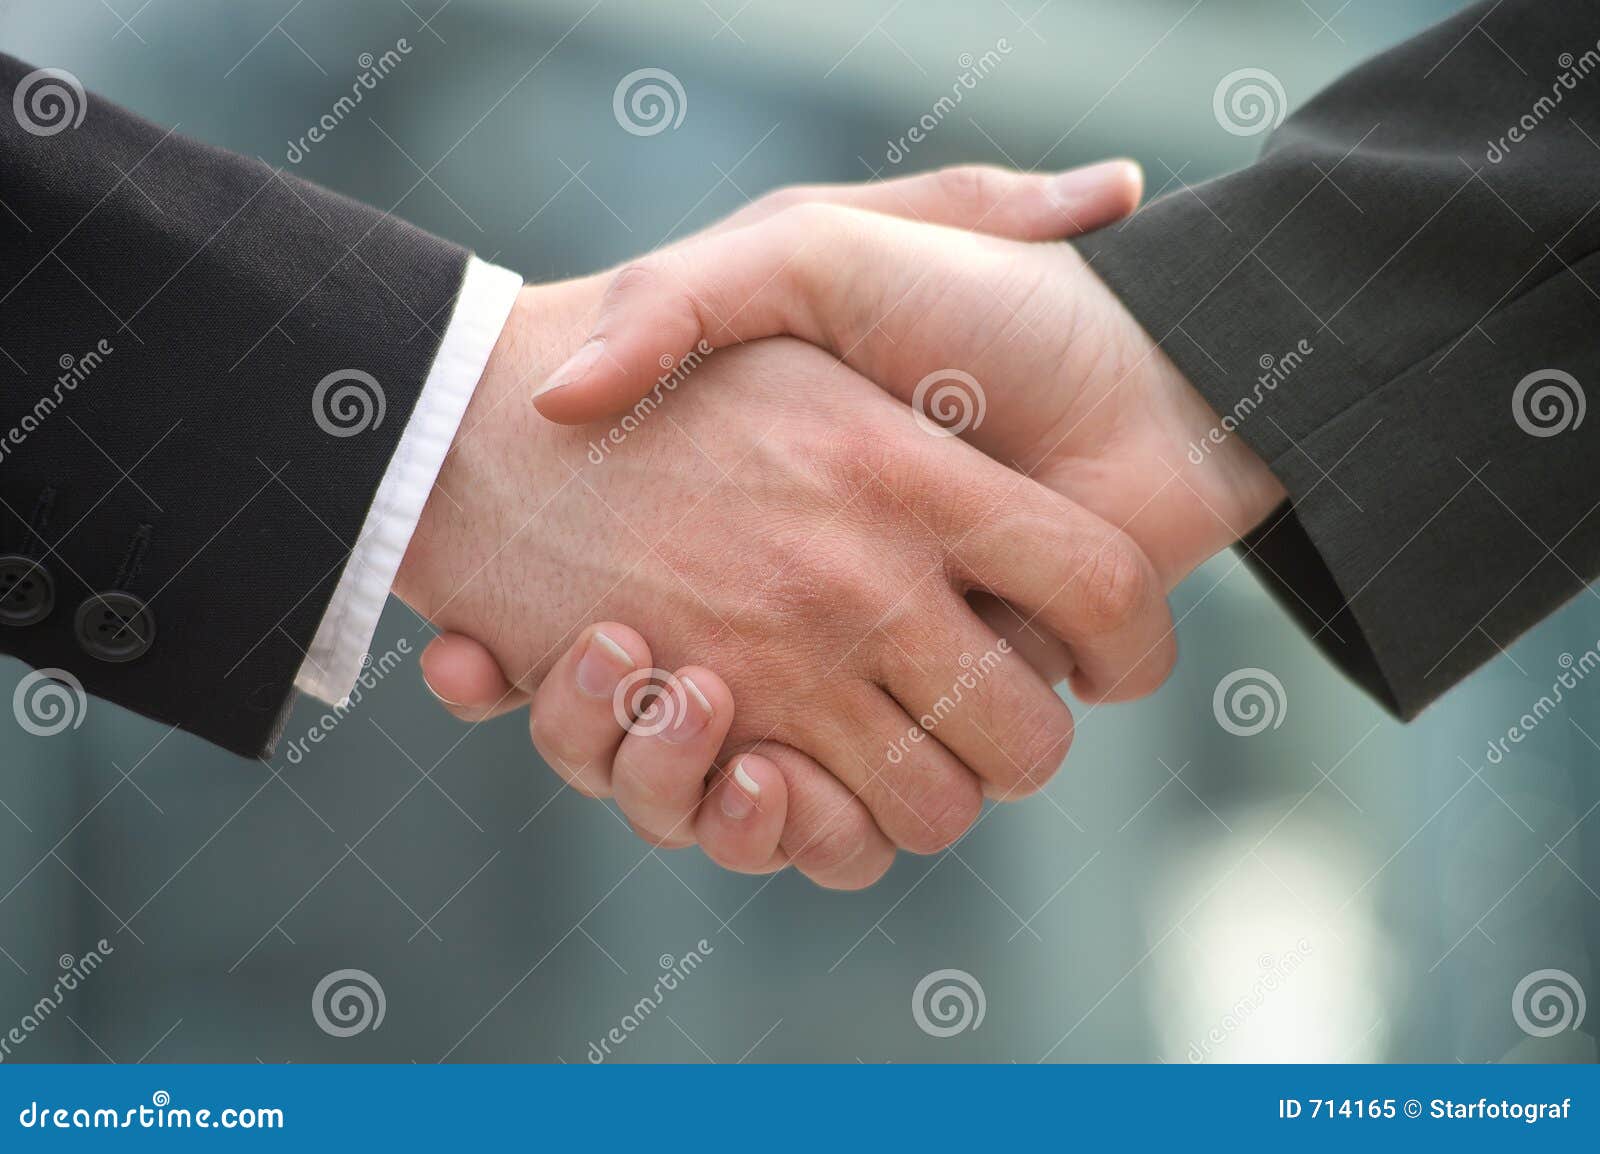 shake-hands